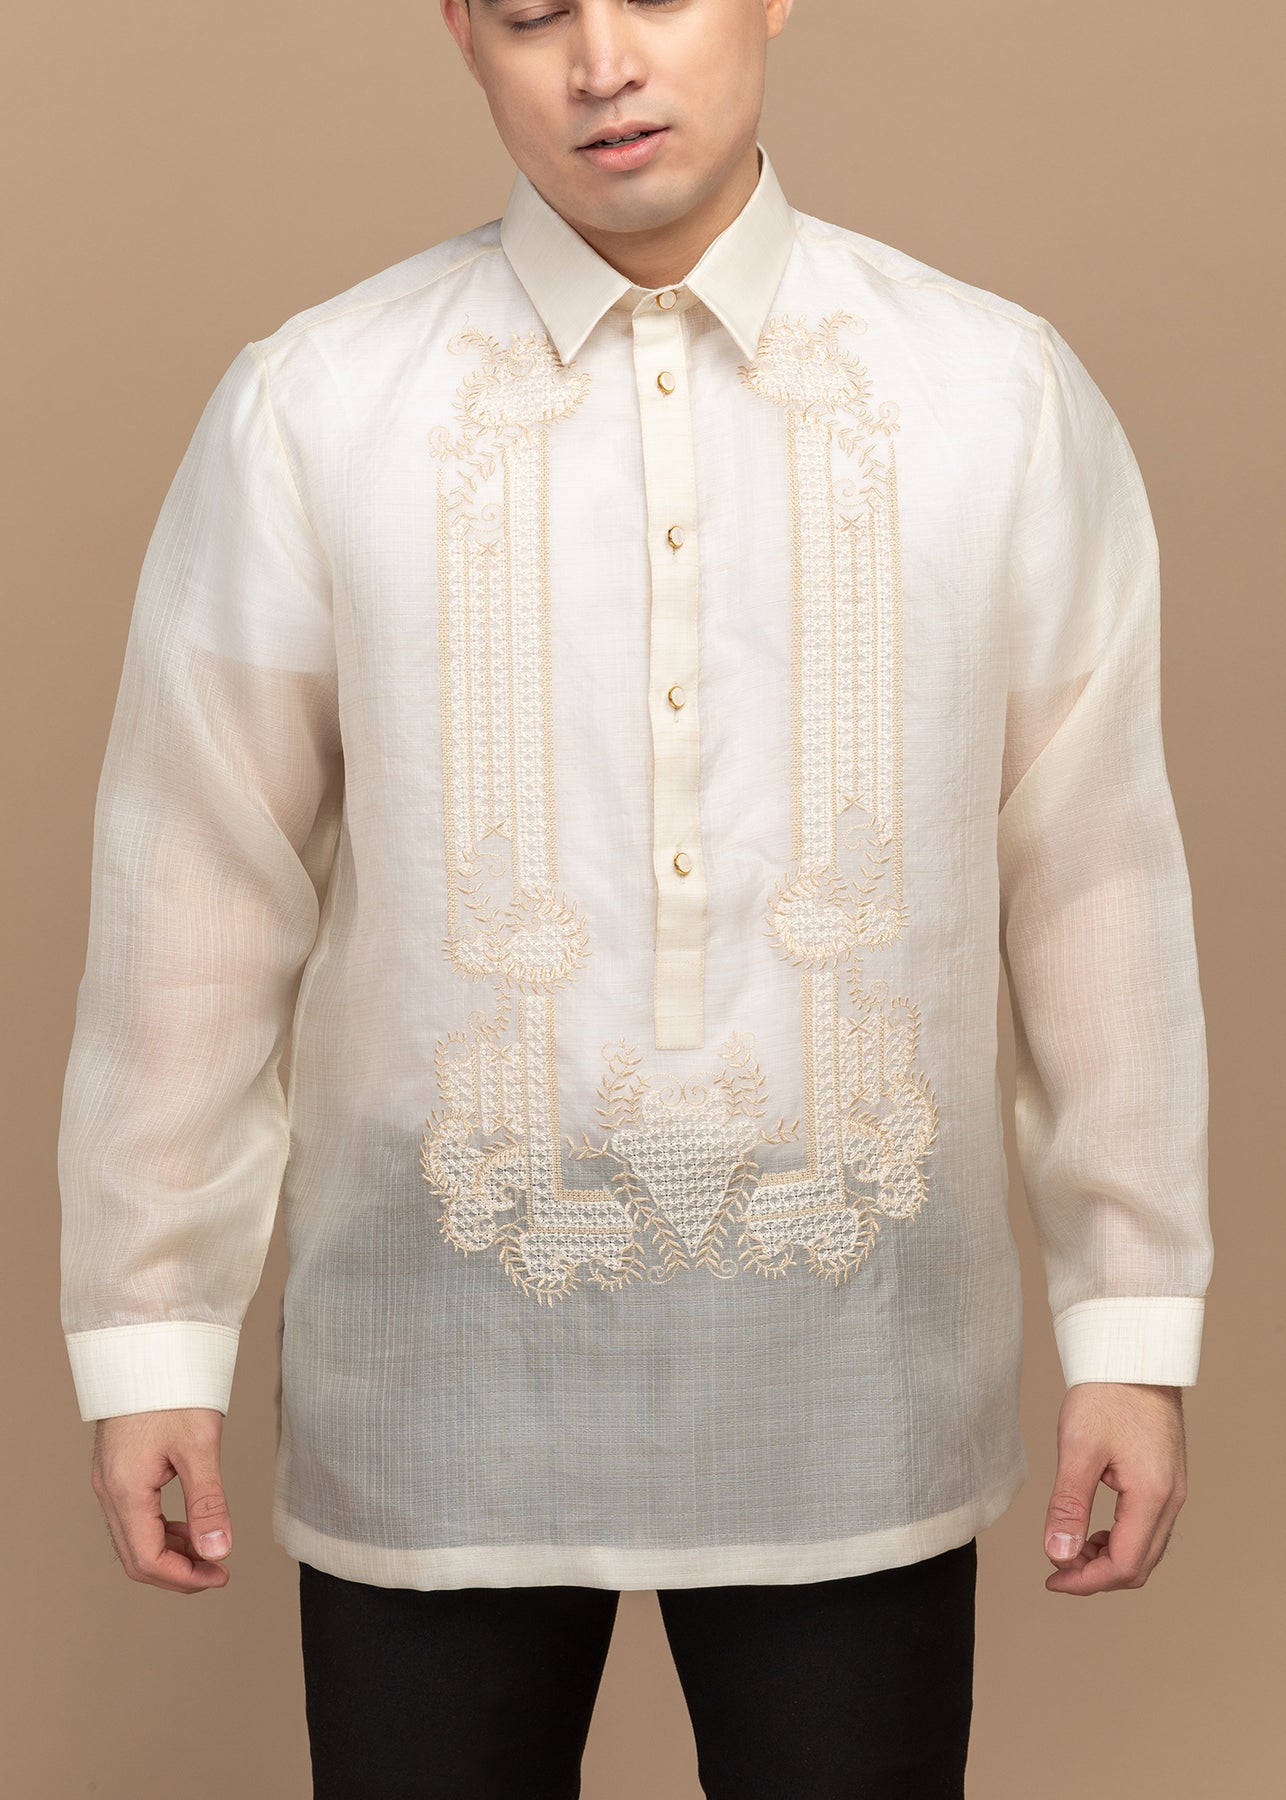 Cocoon Silk Barong – Kultura Filipino | Support Local